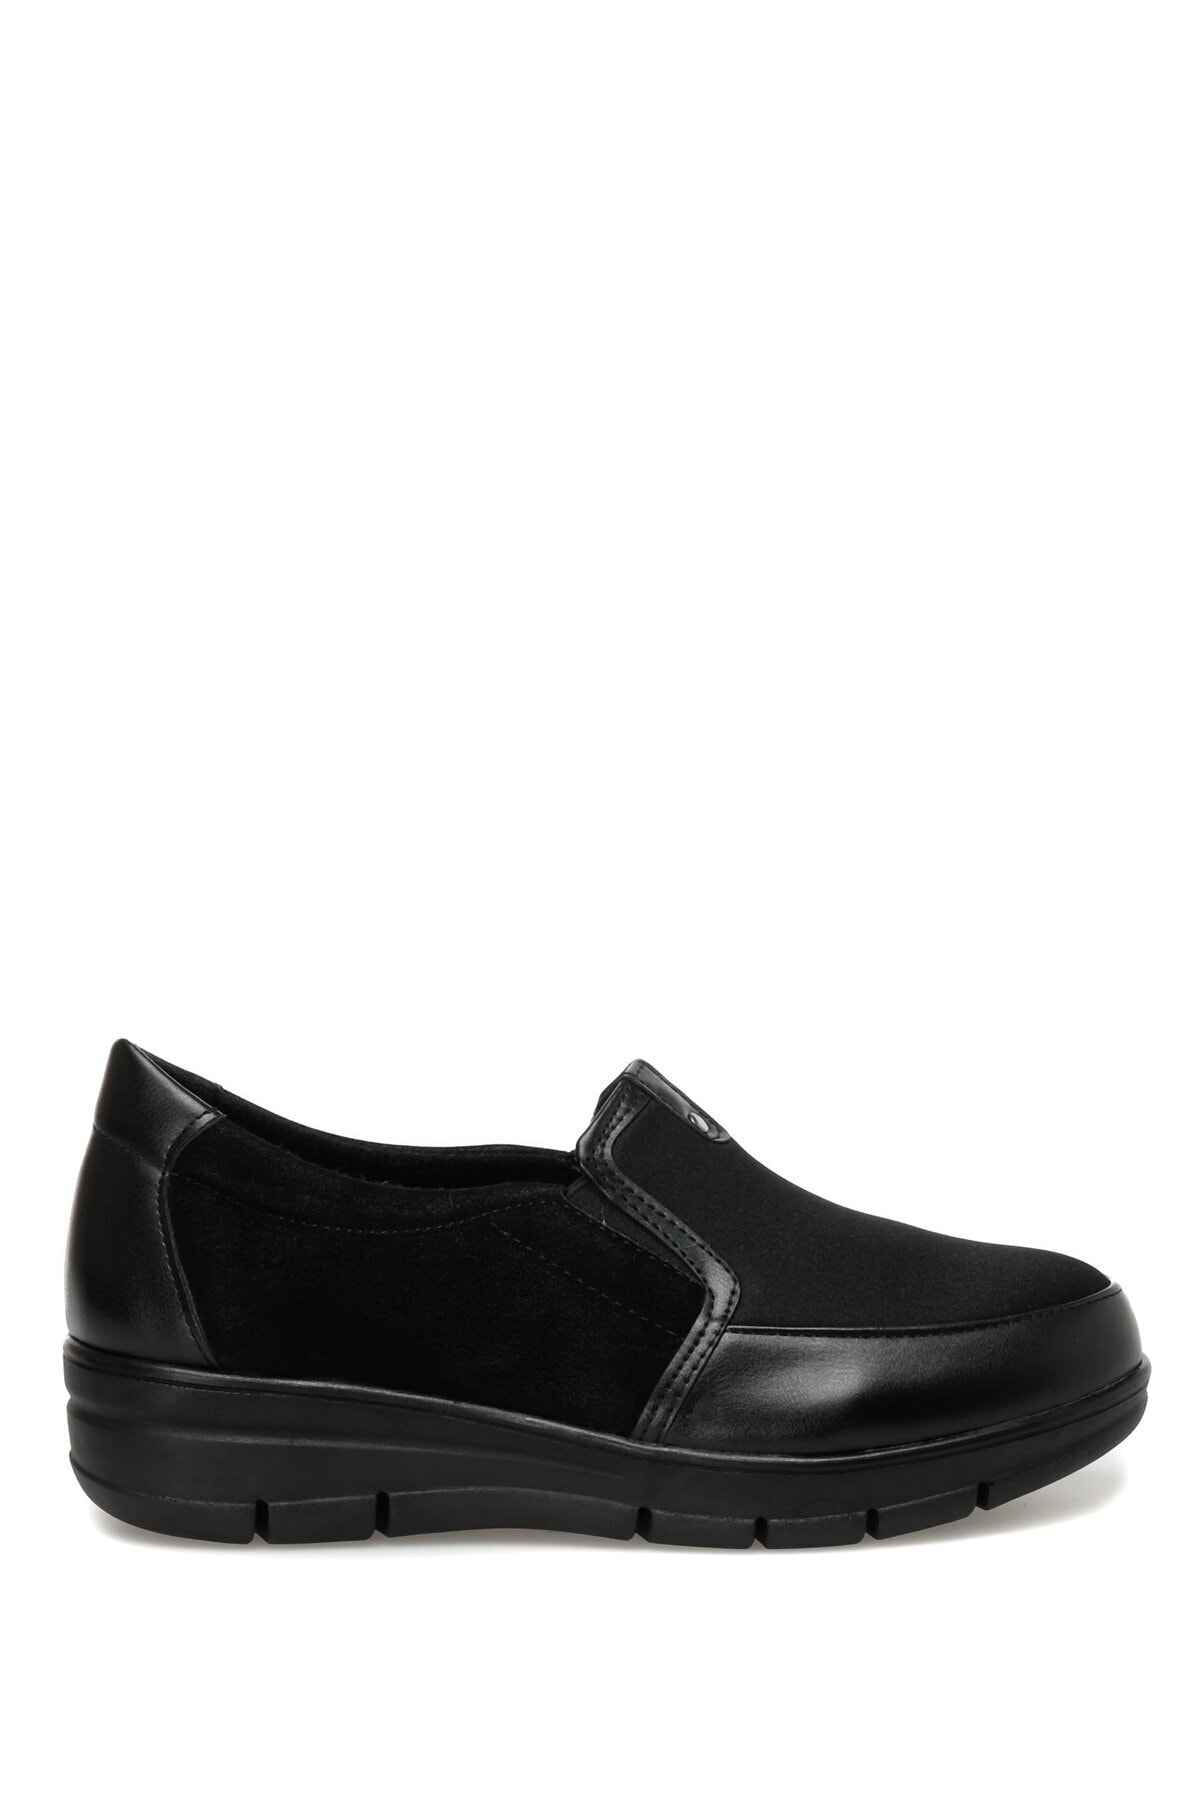 Polaris 162865.z2pr Siyah Kadın Comfort Ayakkabı ON7063